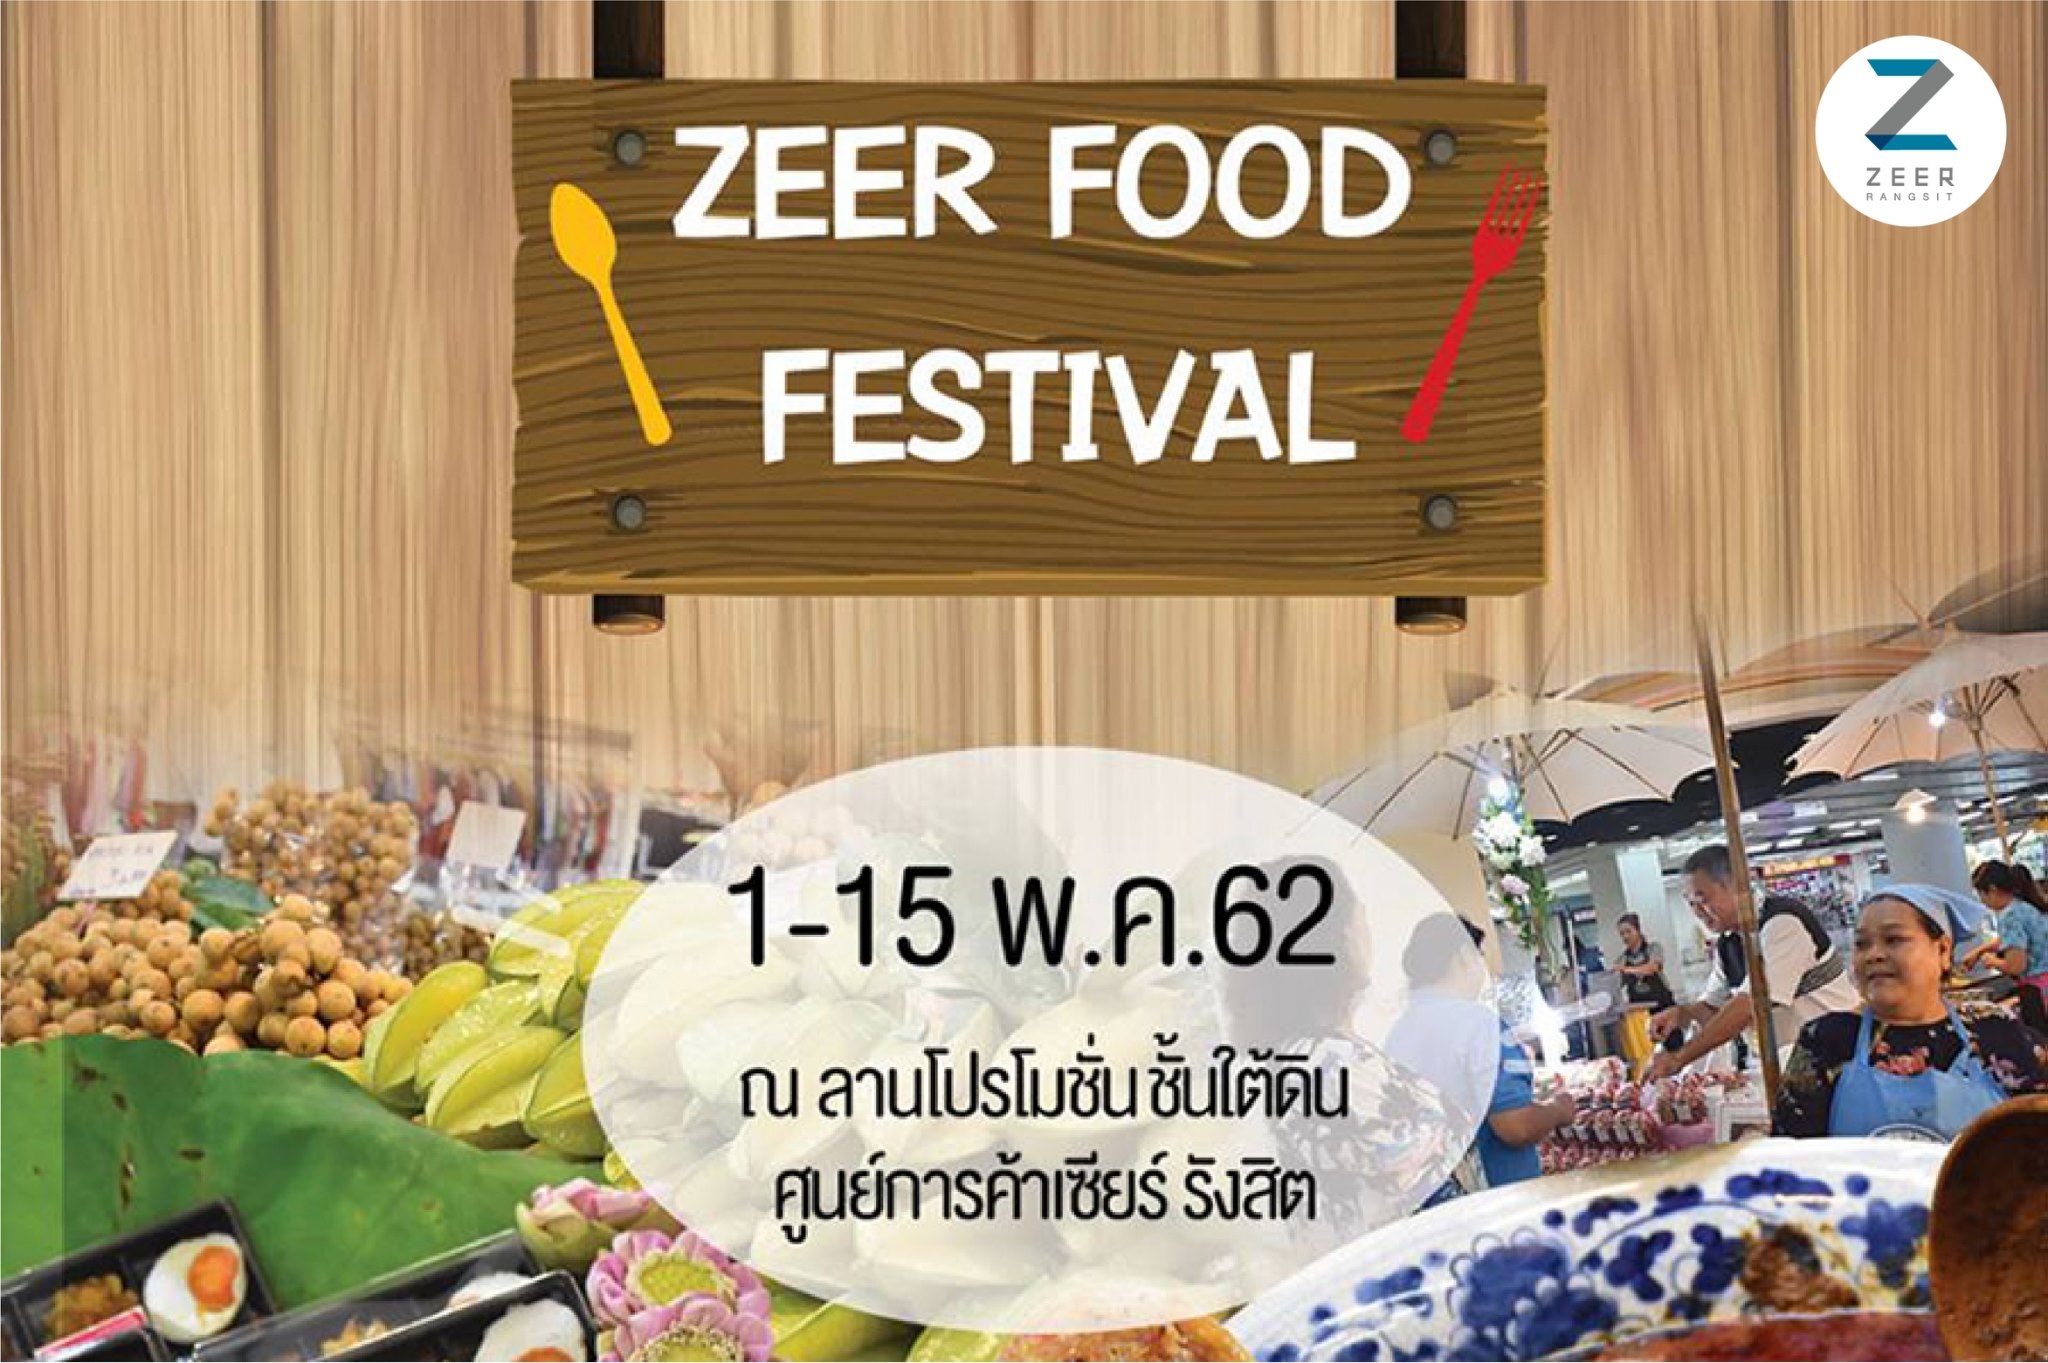 Zeer Food Festival